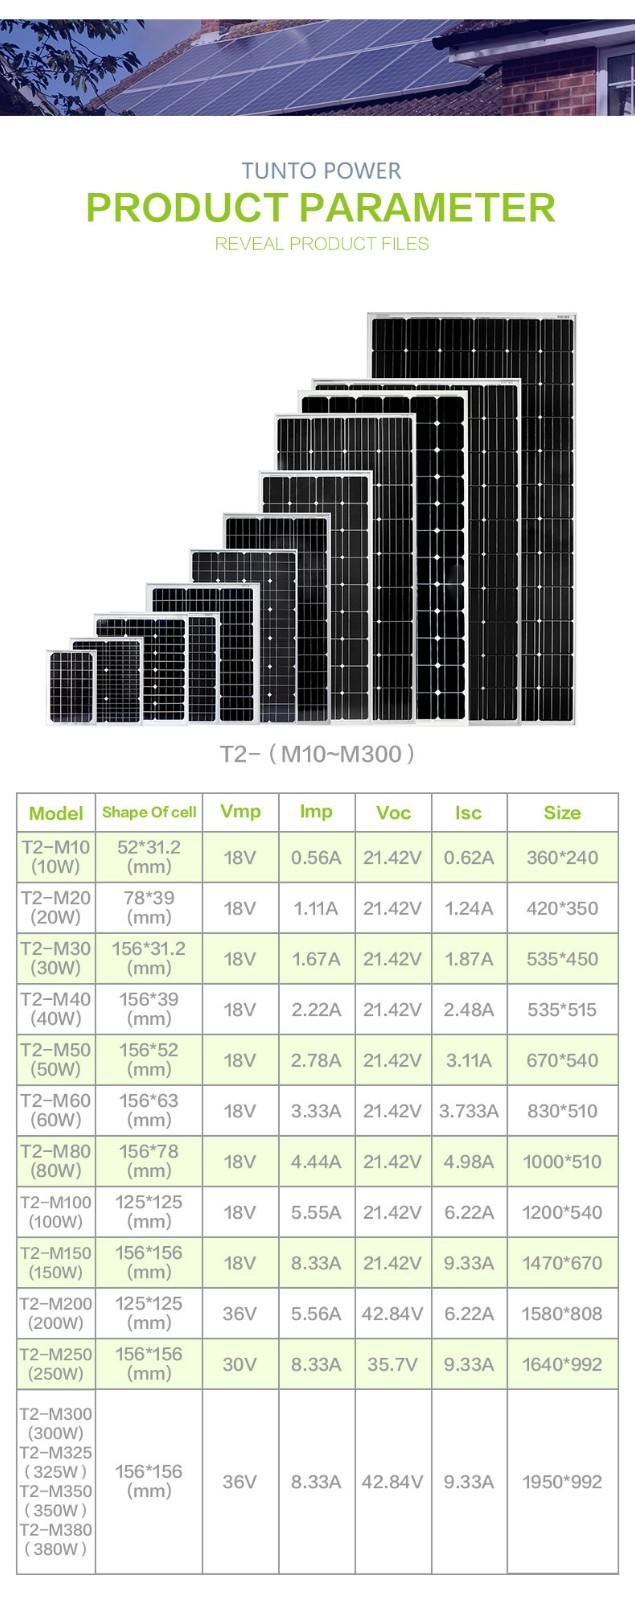 380w monocrystalline solar panel supplier for household